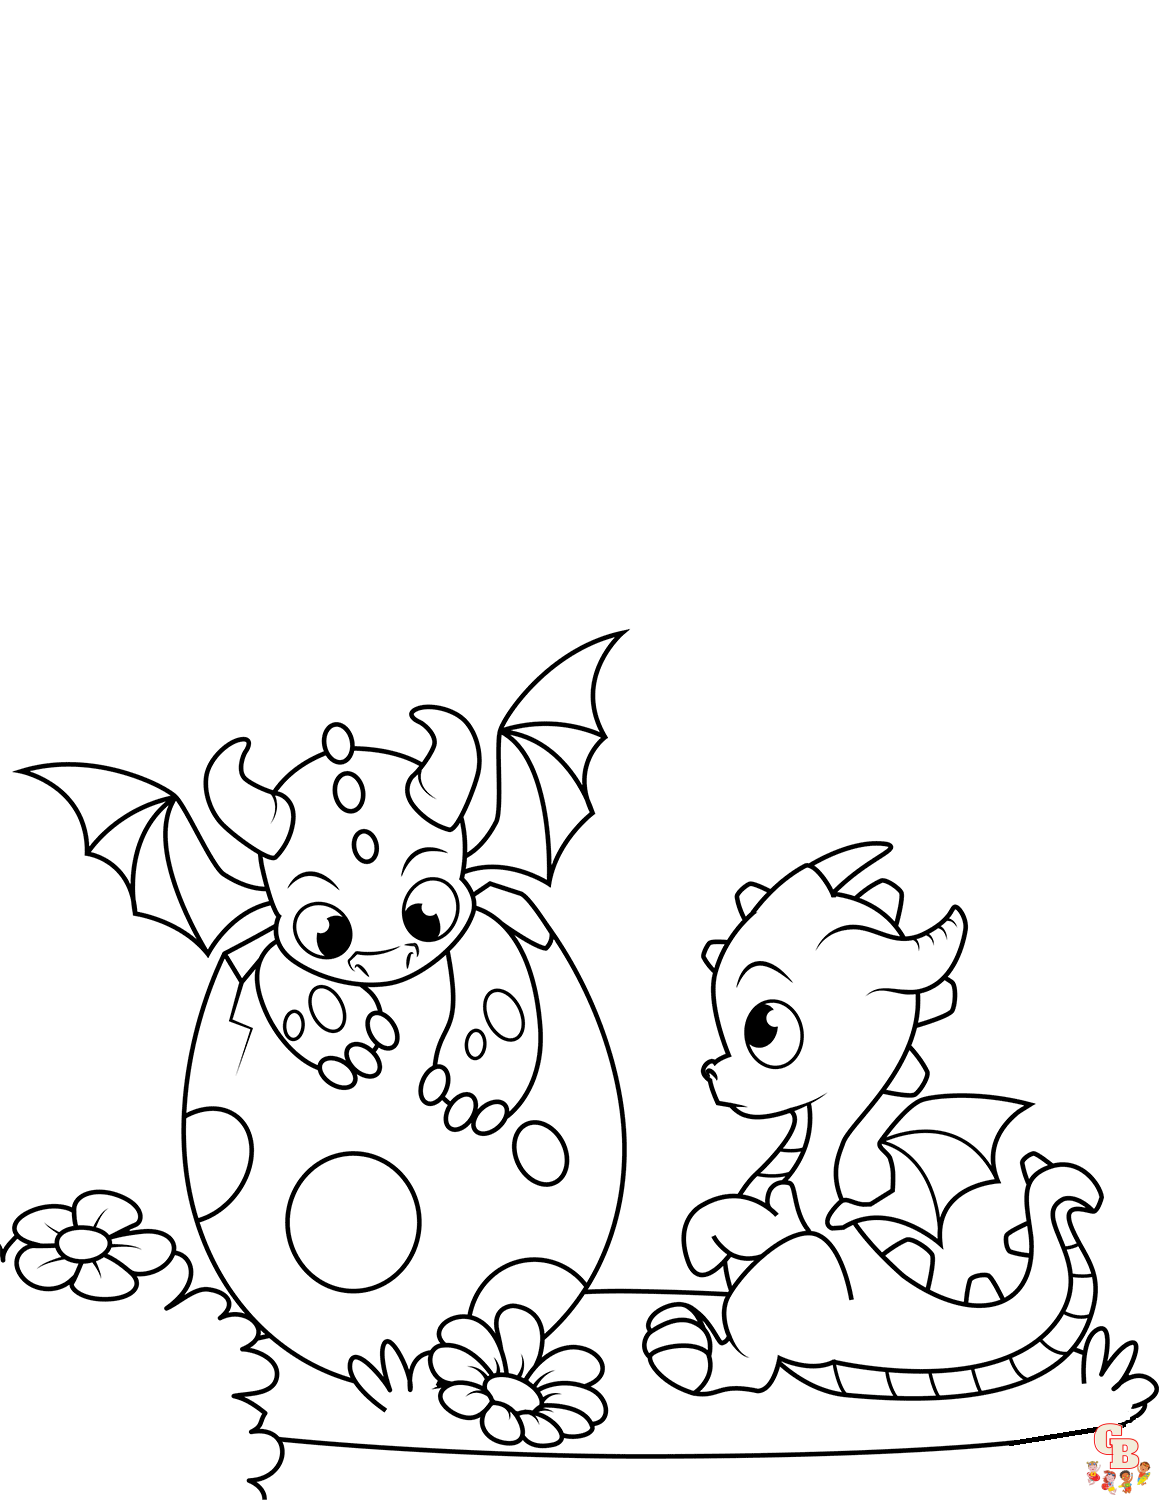 Dibujos para colorear de dragones lindos gratis para imprimir para niños